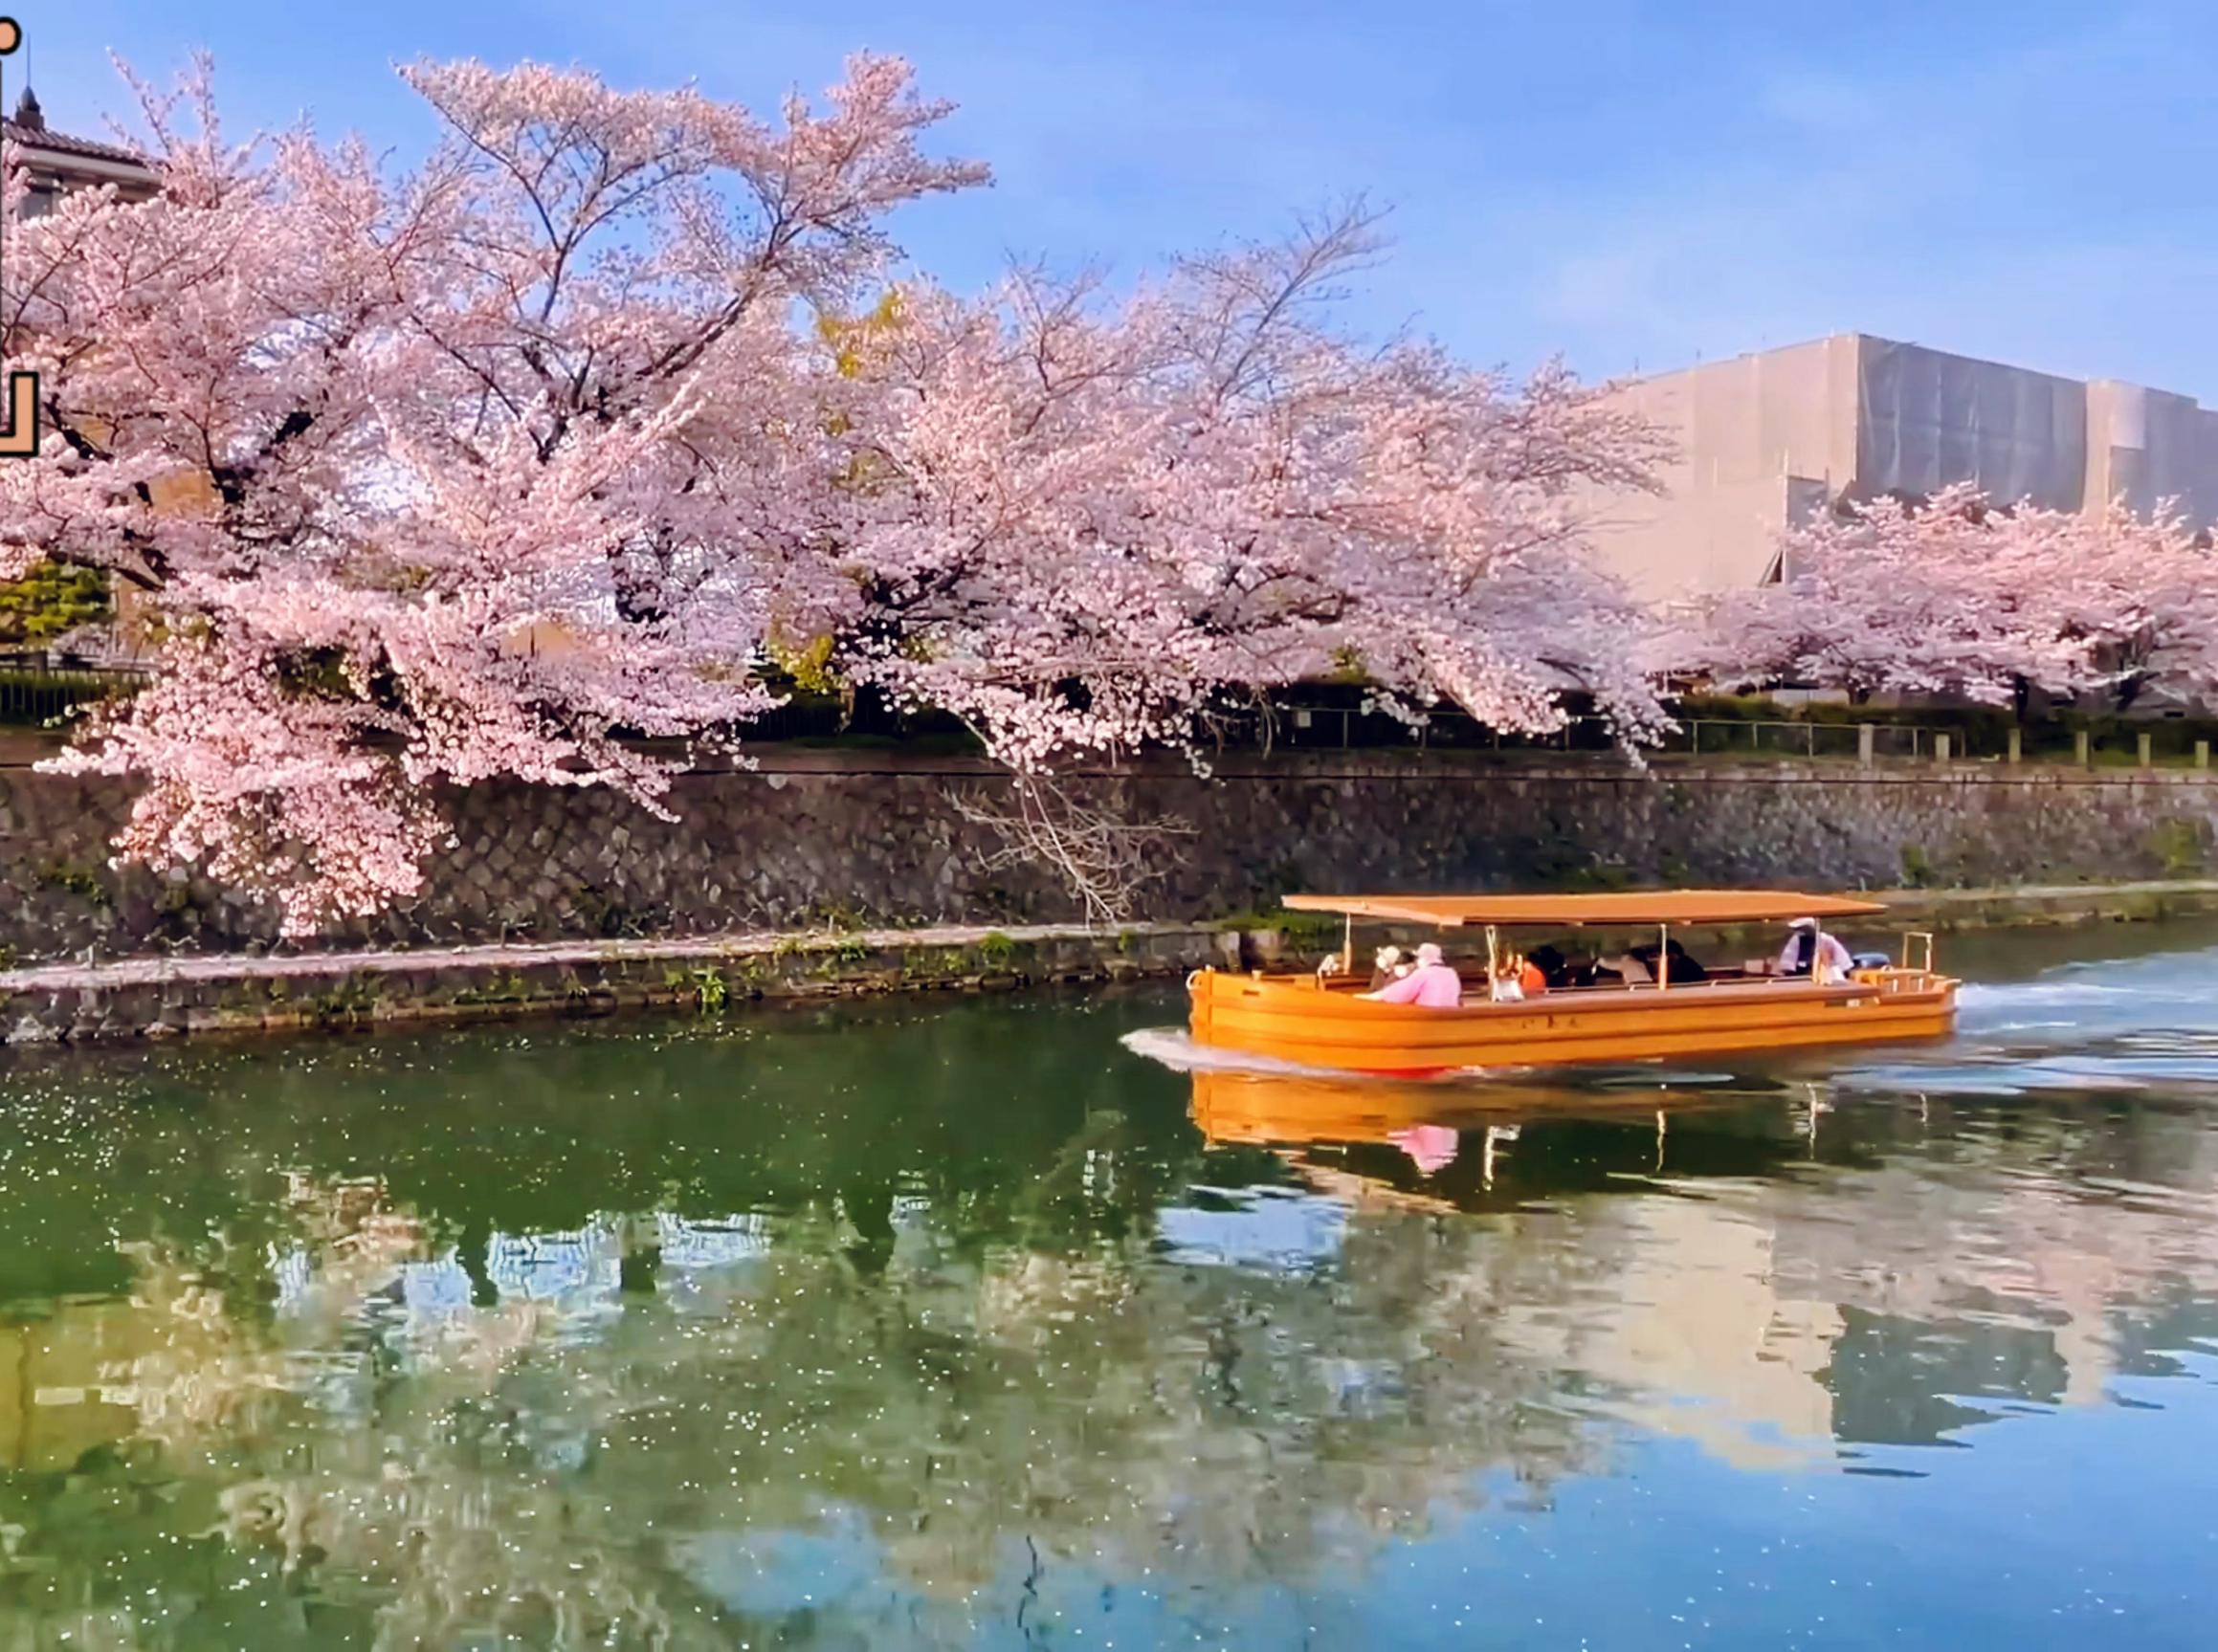 京都冈崎运河：樱花盛宴上的摇曳船影 🌸🚤✨